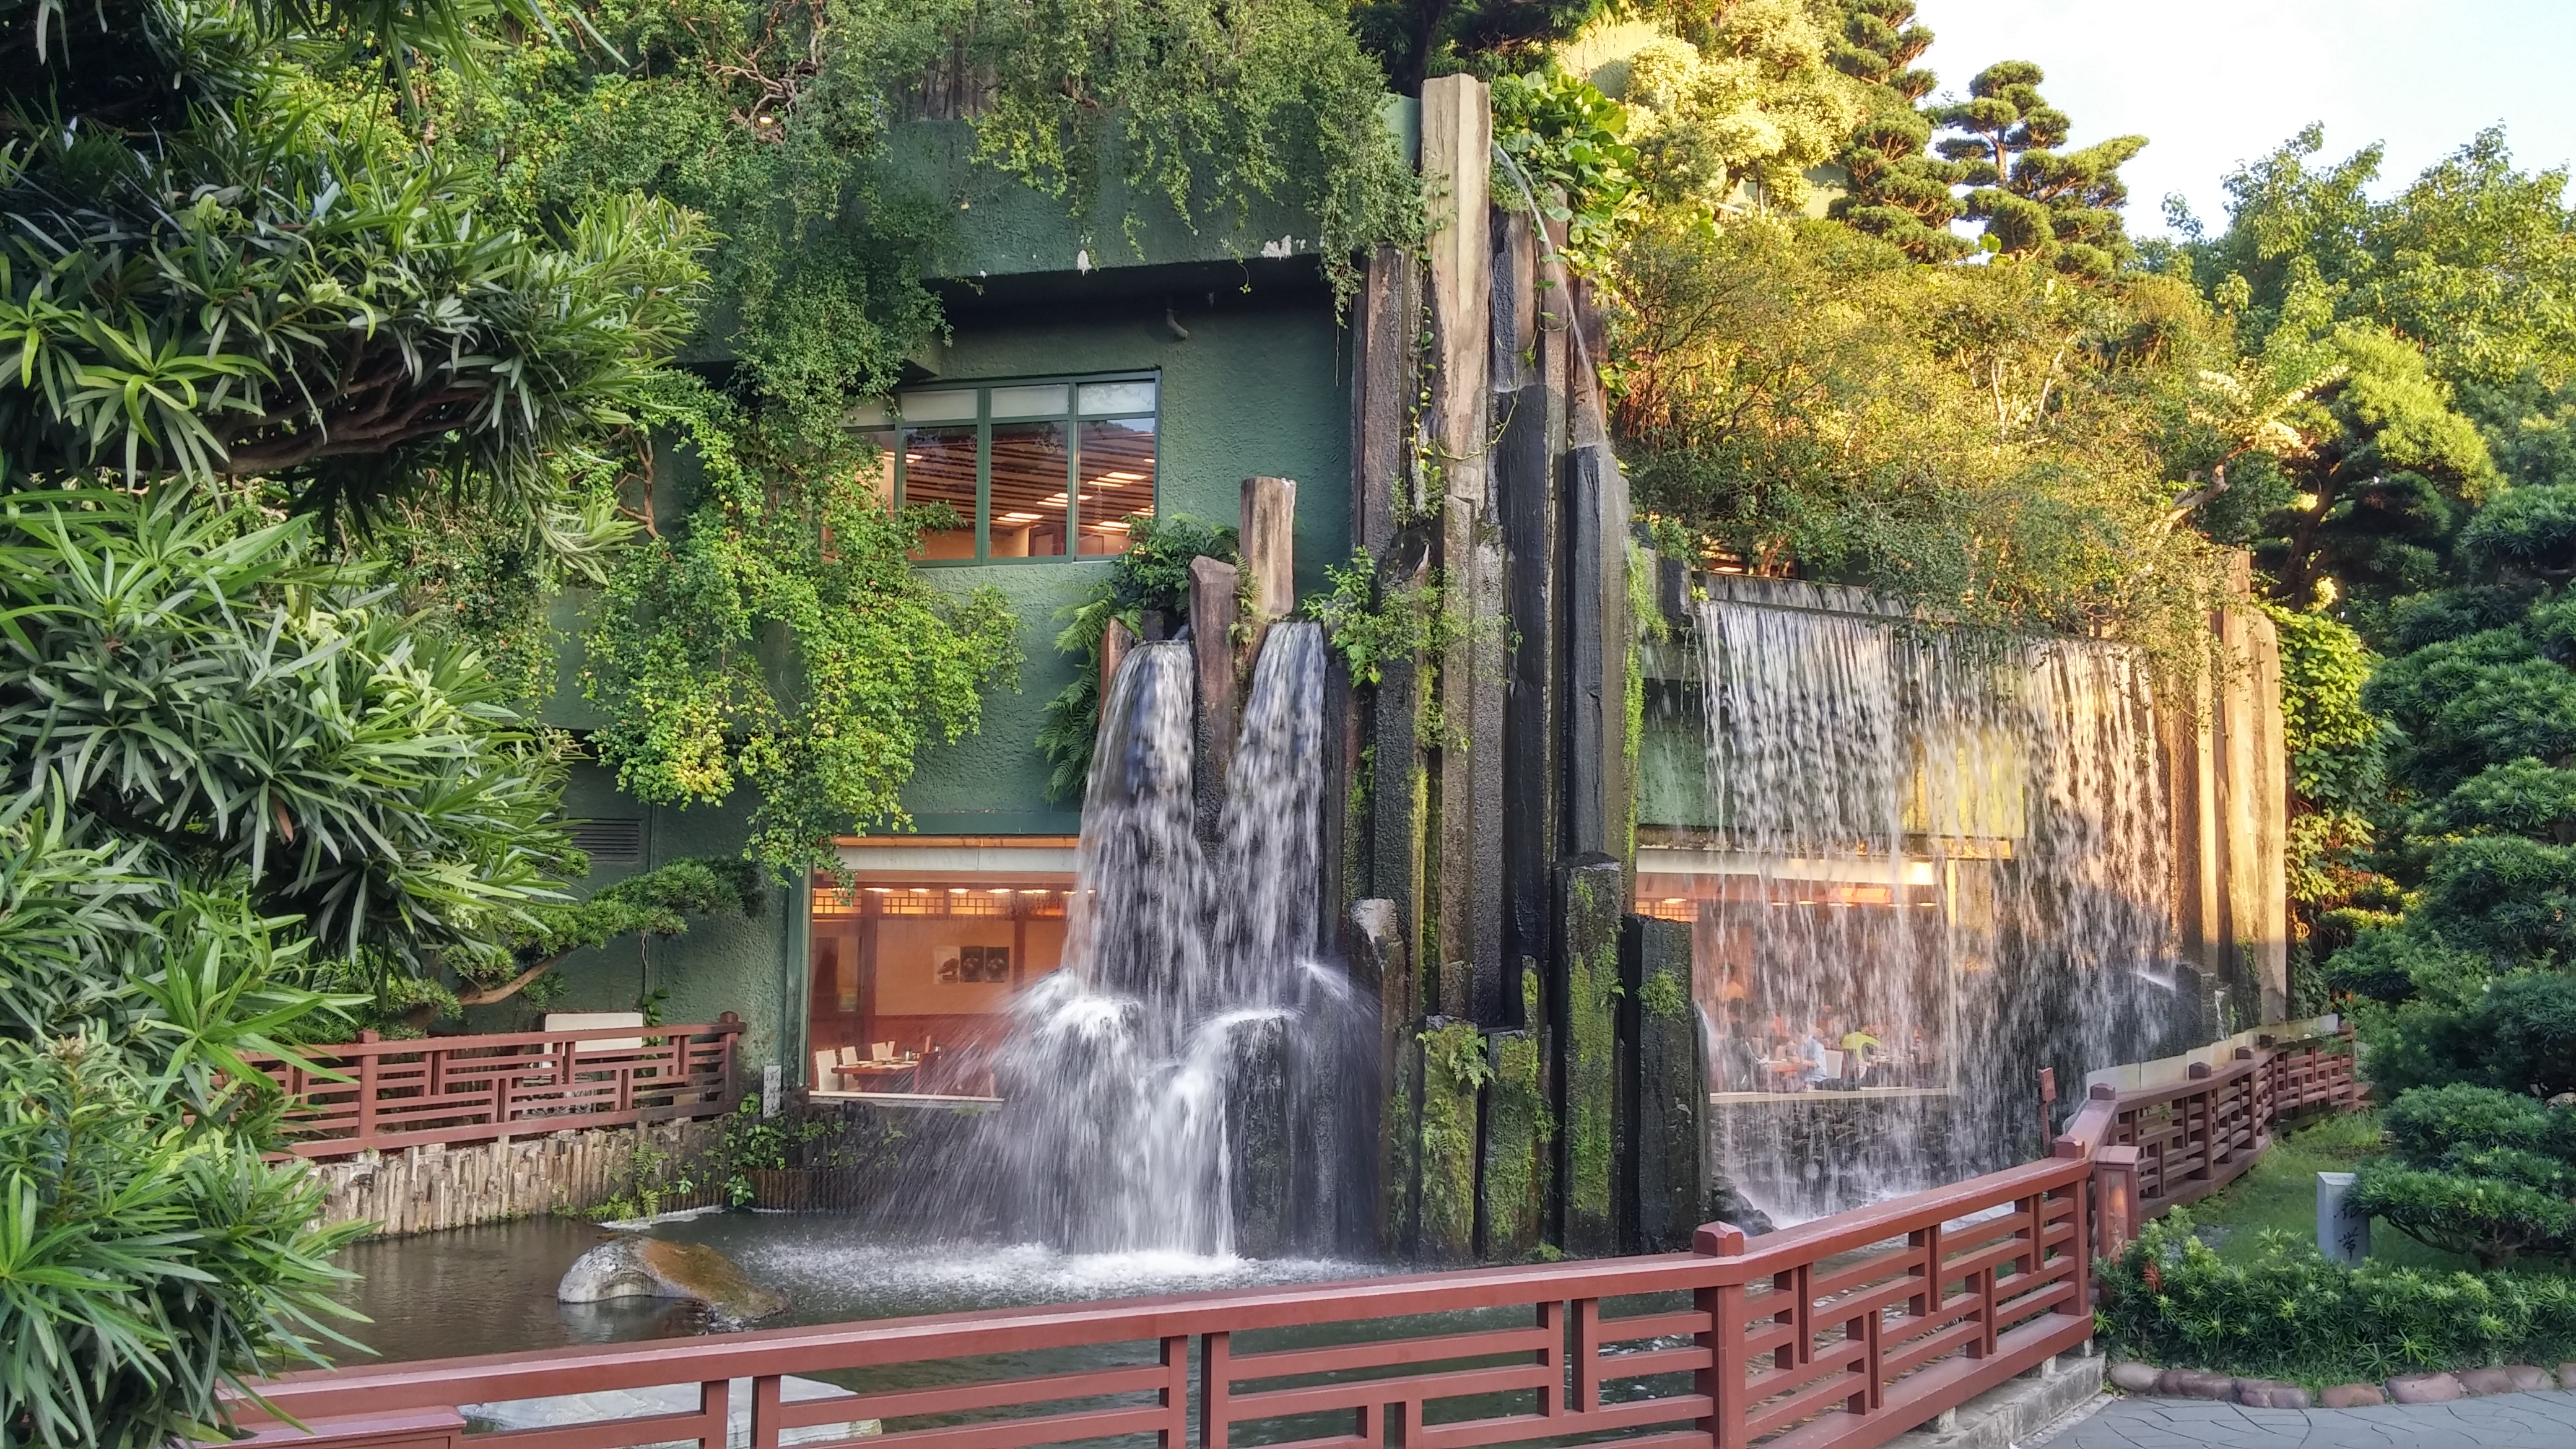 Nan Lian Garden waterfall and vegetarian restaurant